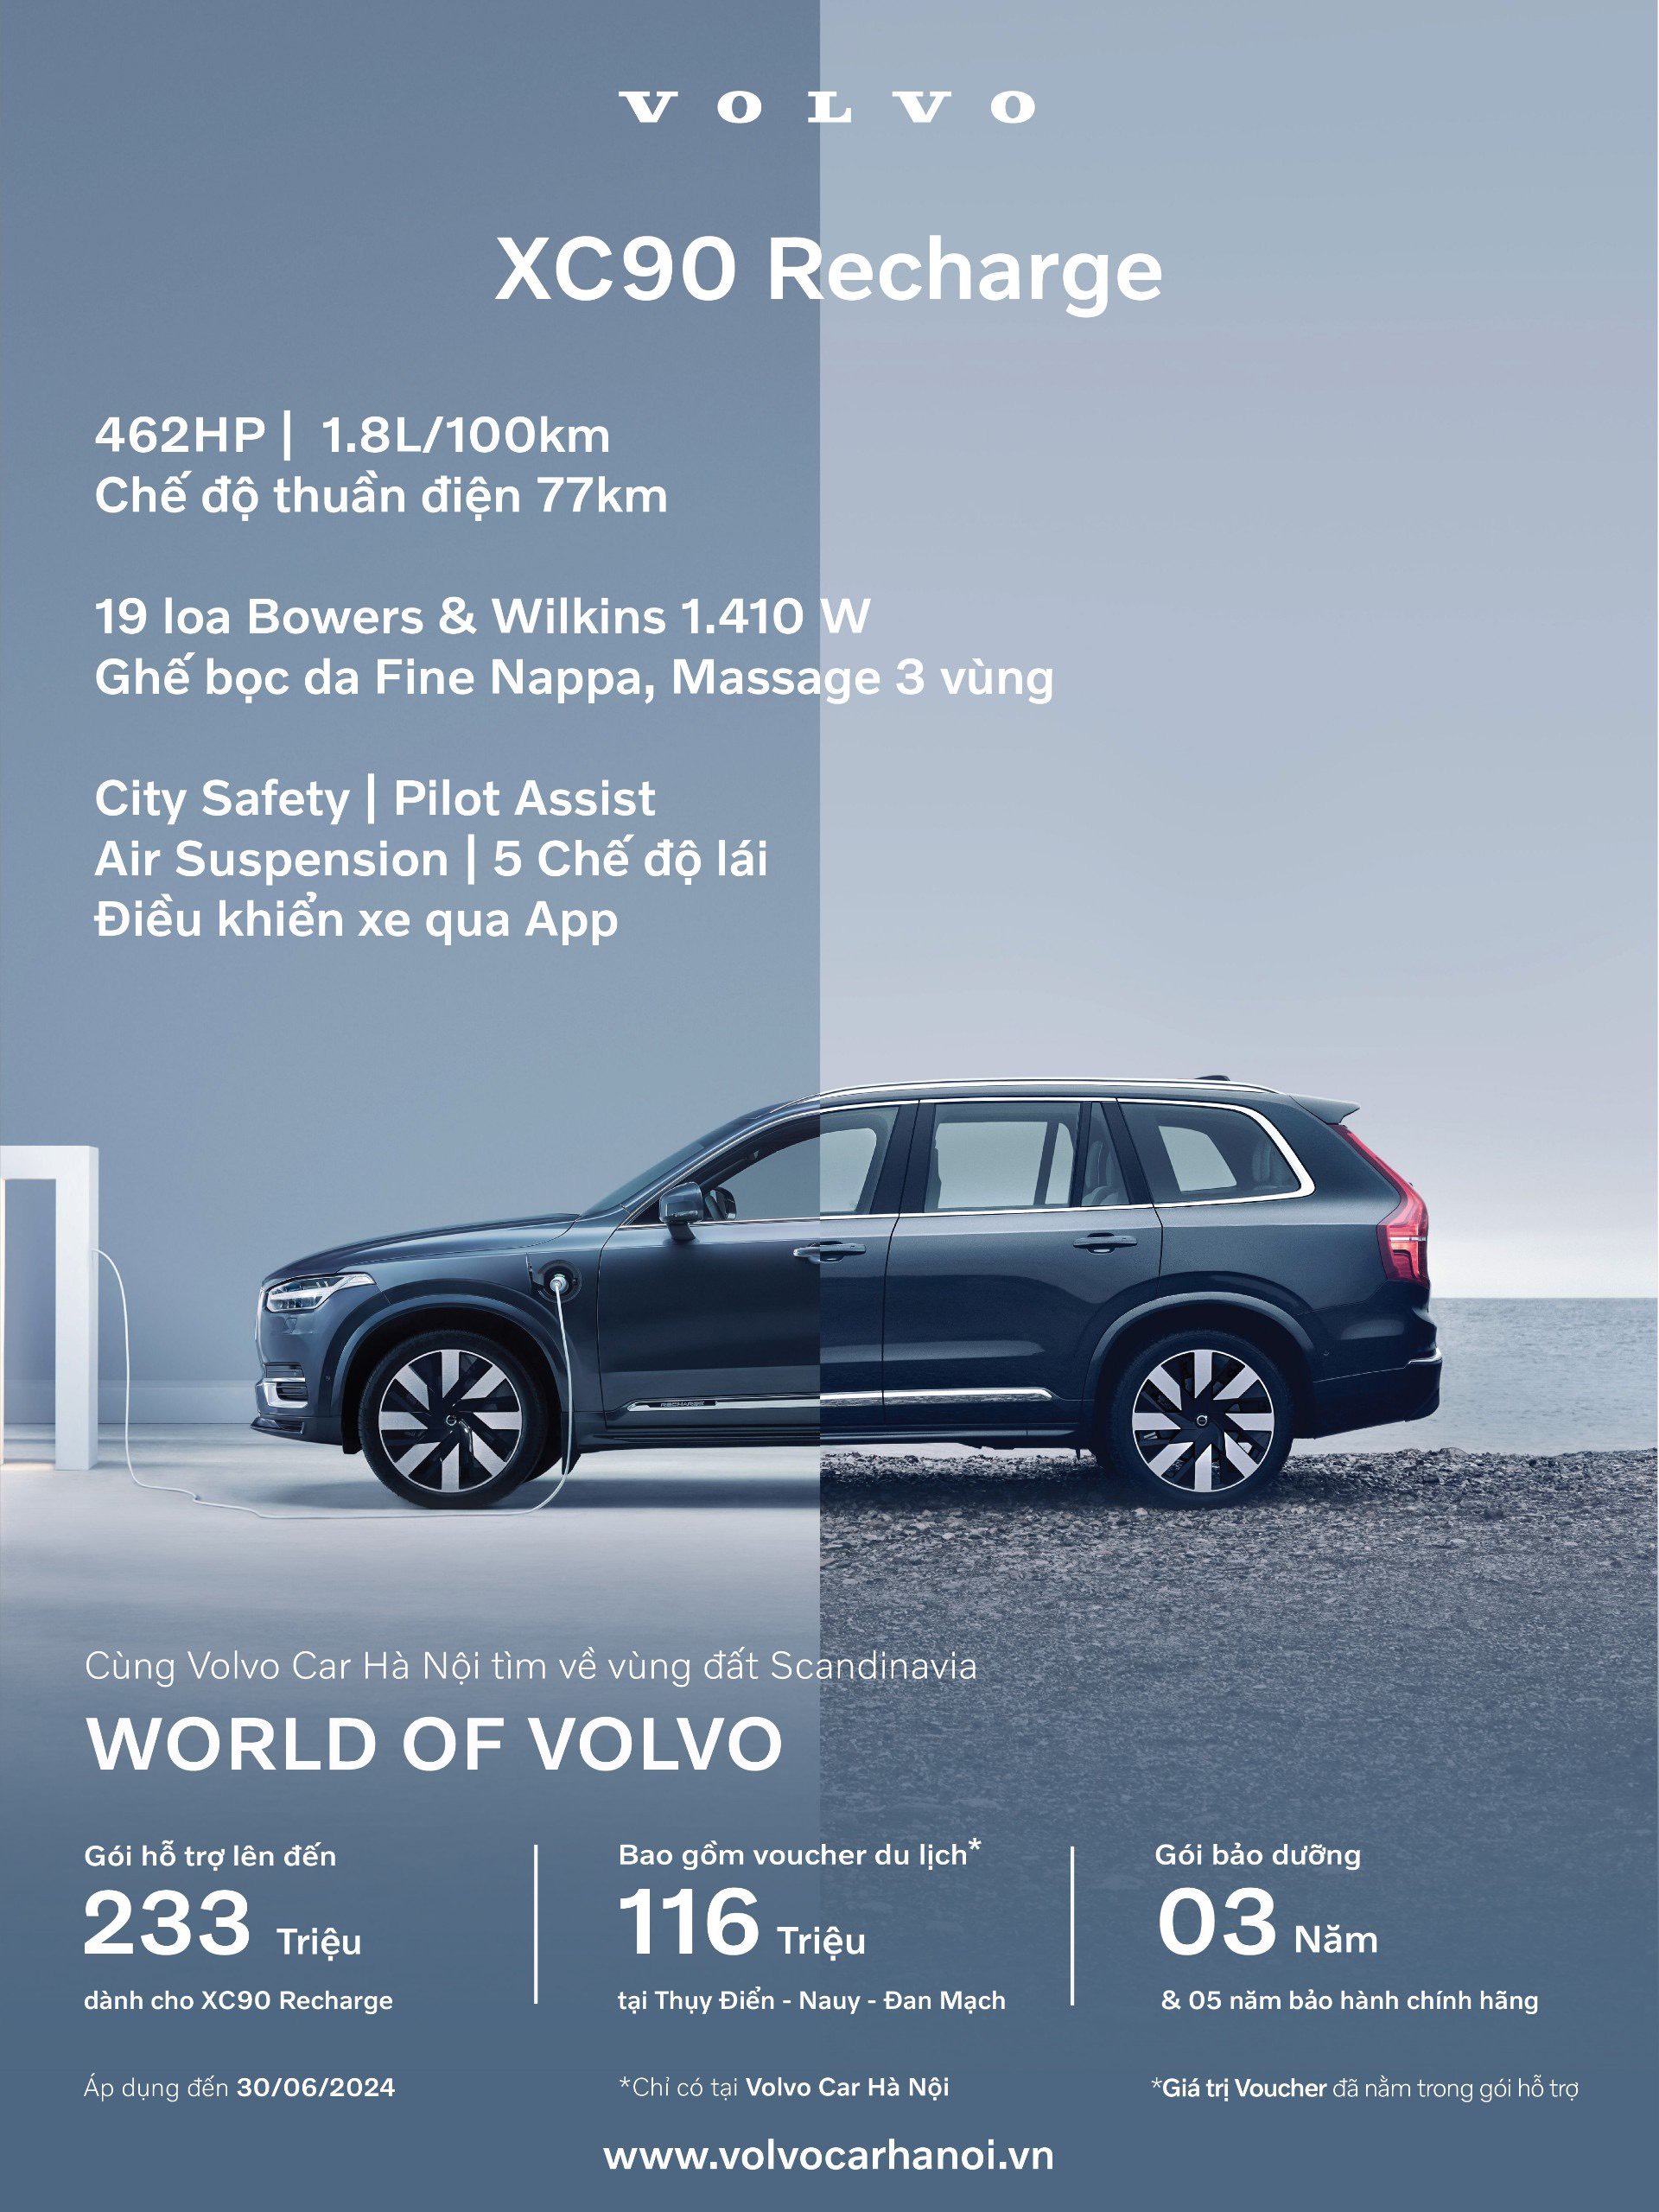 Volvo XC90 Recharge: Sang trọng, mạnh mẽ và tiết kiệm